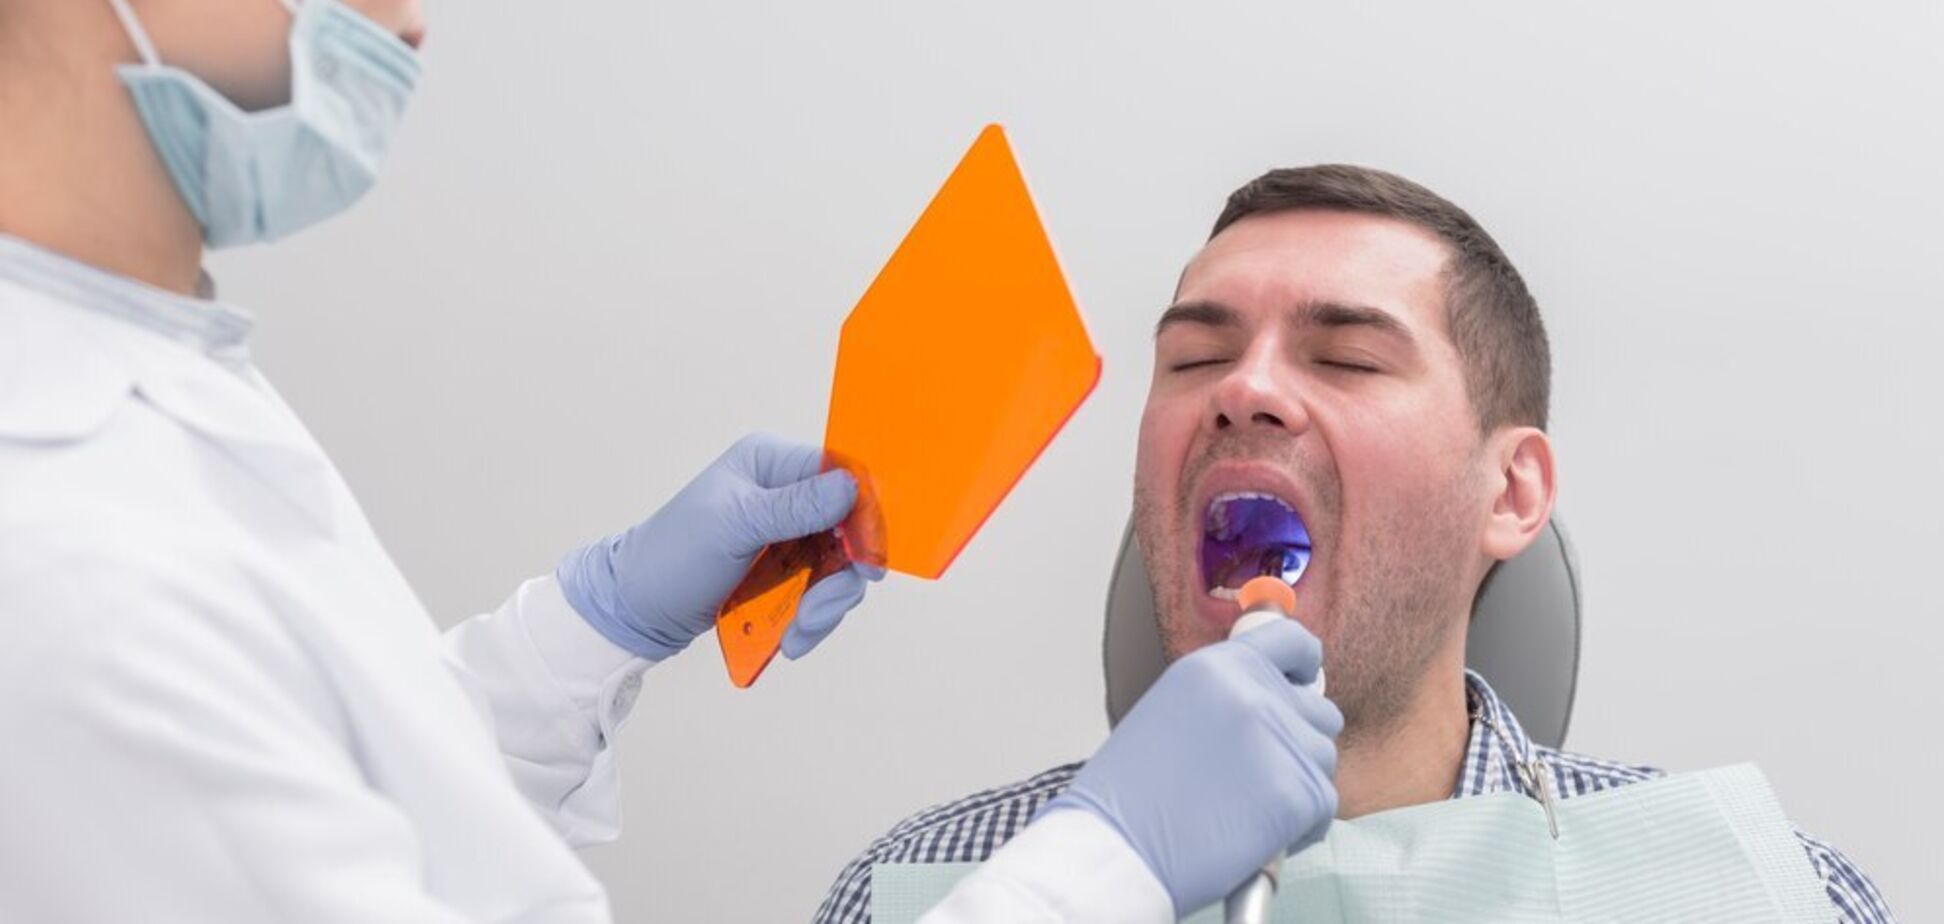 Коли відламався зуб: що робити та чи потрібно йти до стоматолога